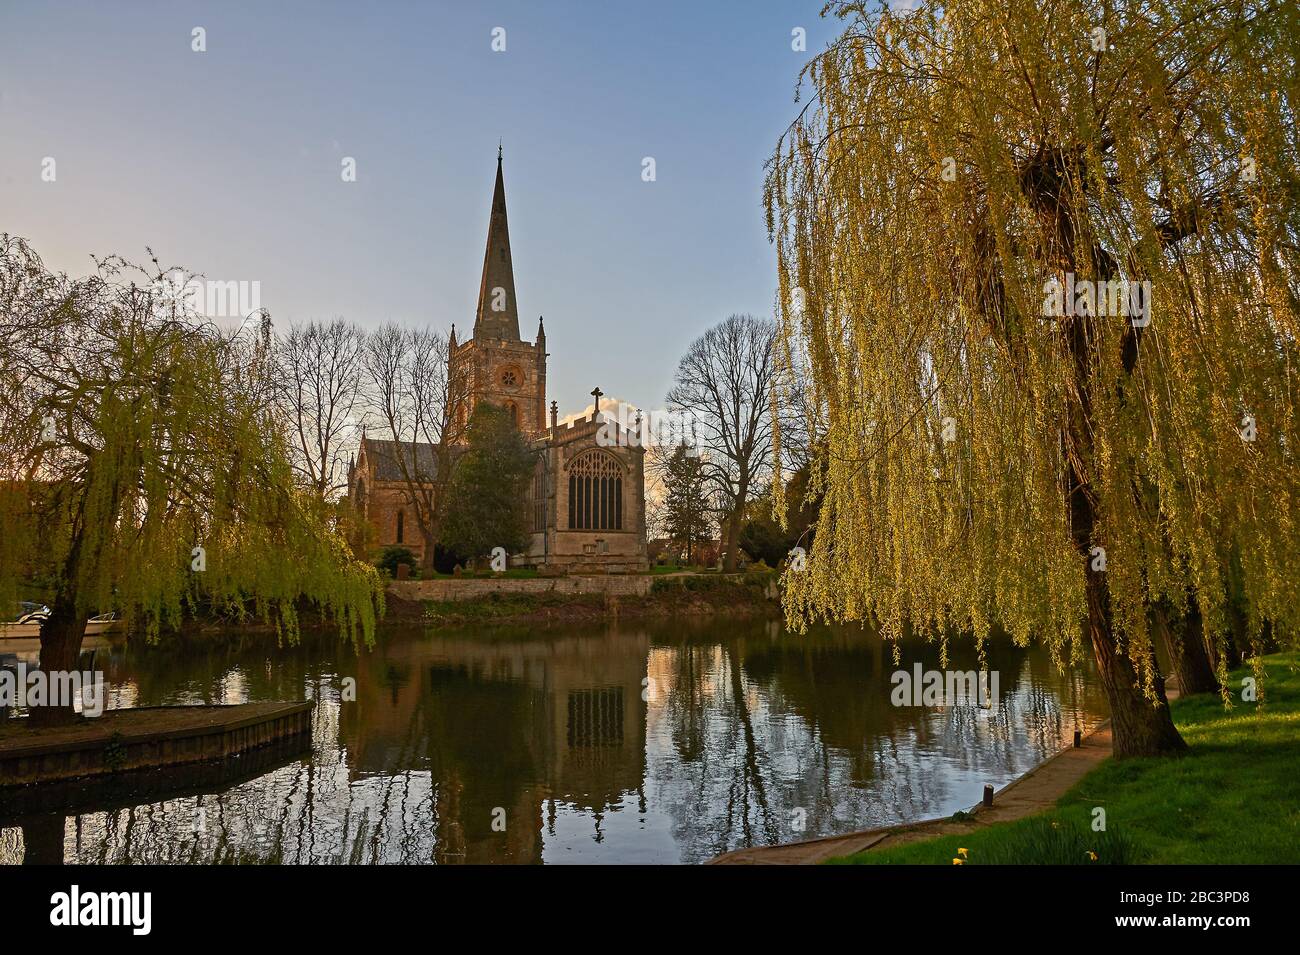 Église Sainte-Trinité Stratford upon Avon Warwickshire se dresse au-dessus de la rivière Avon. C'est le lieu de sépulture de William Shakespeare célèbre dramaturge. Banque D'Images